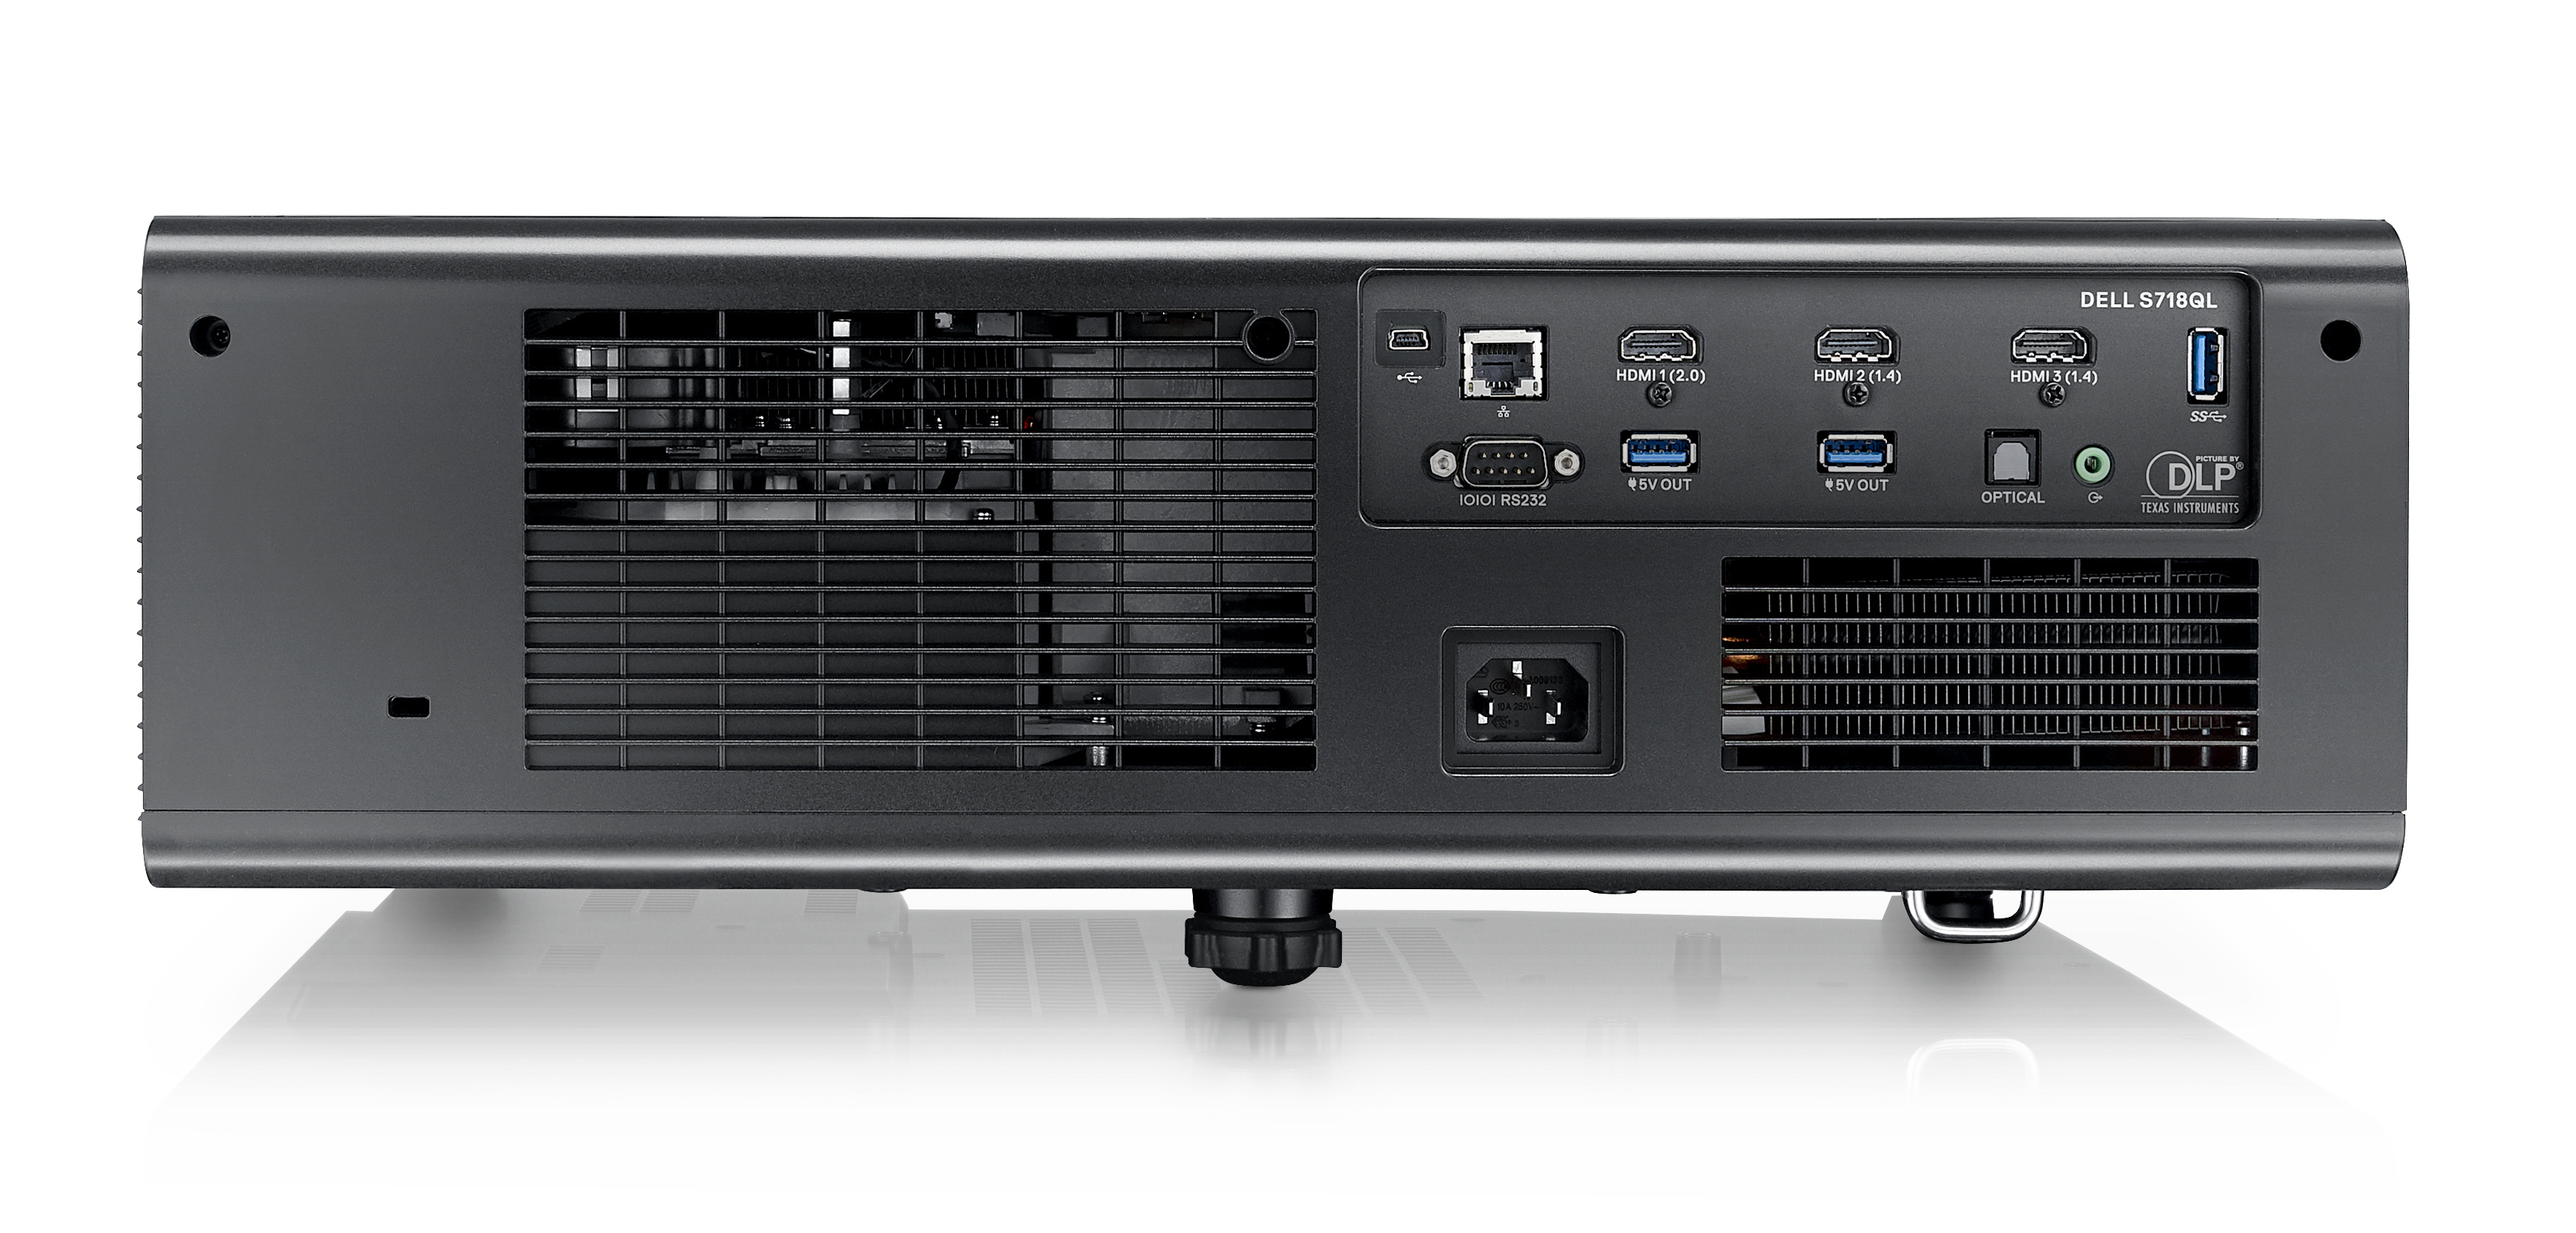 S718QL Beamer(Full-HD, 5000 DELL ANSI-Lumen)